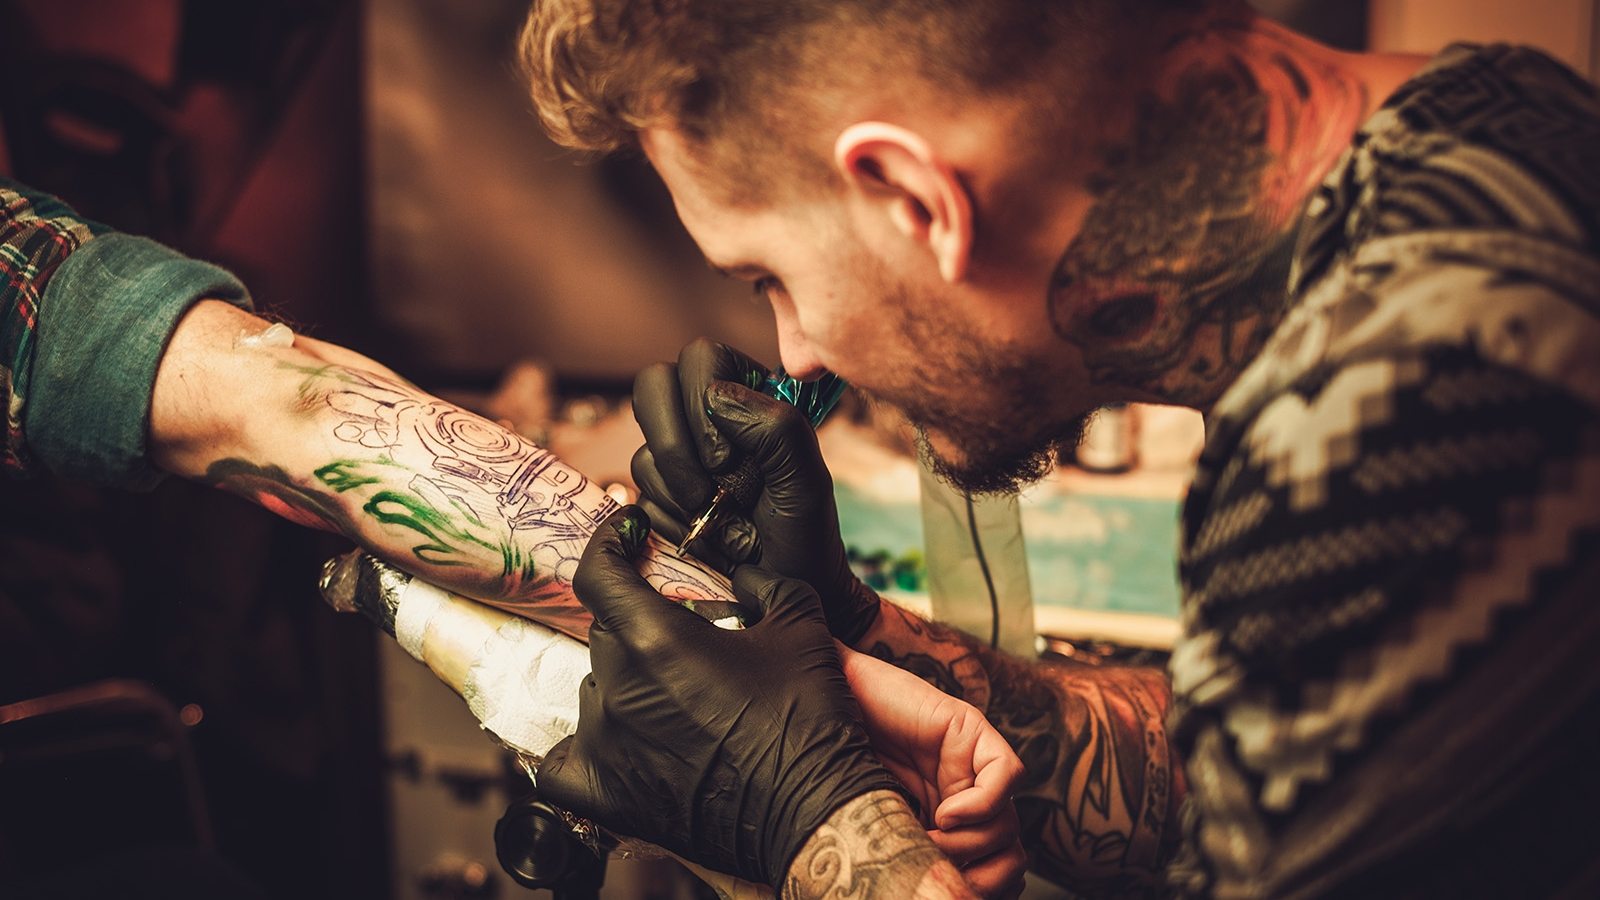 Tattoo artist makes a tattoo on a man's hand